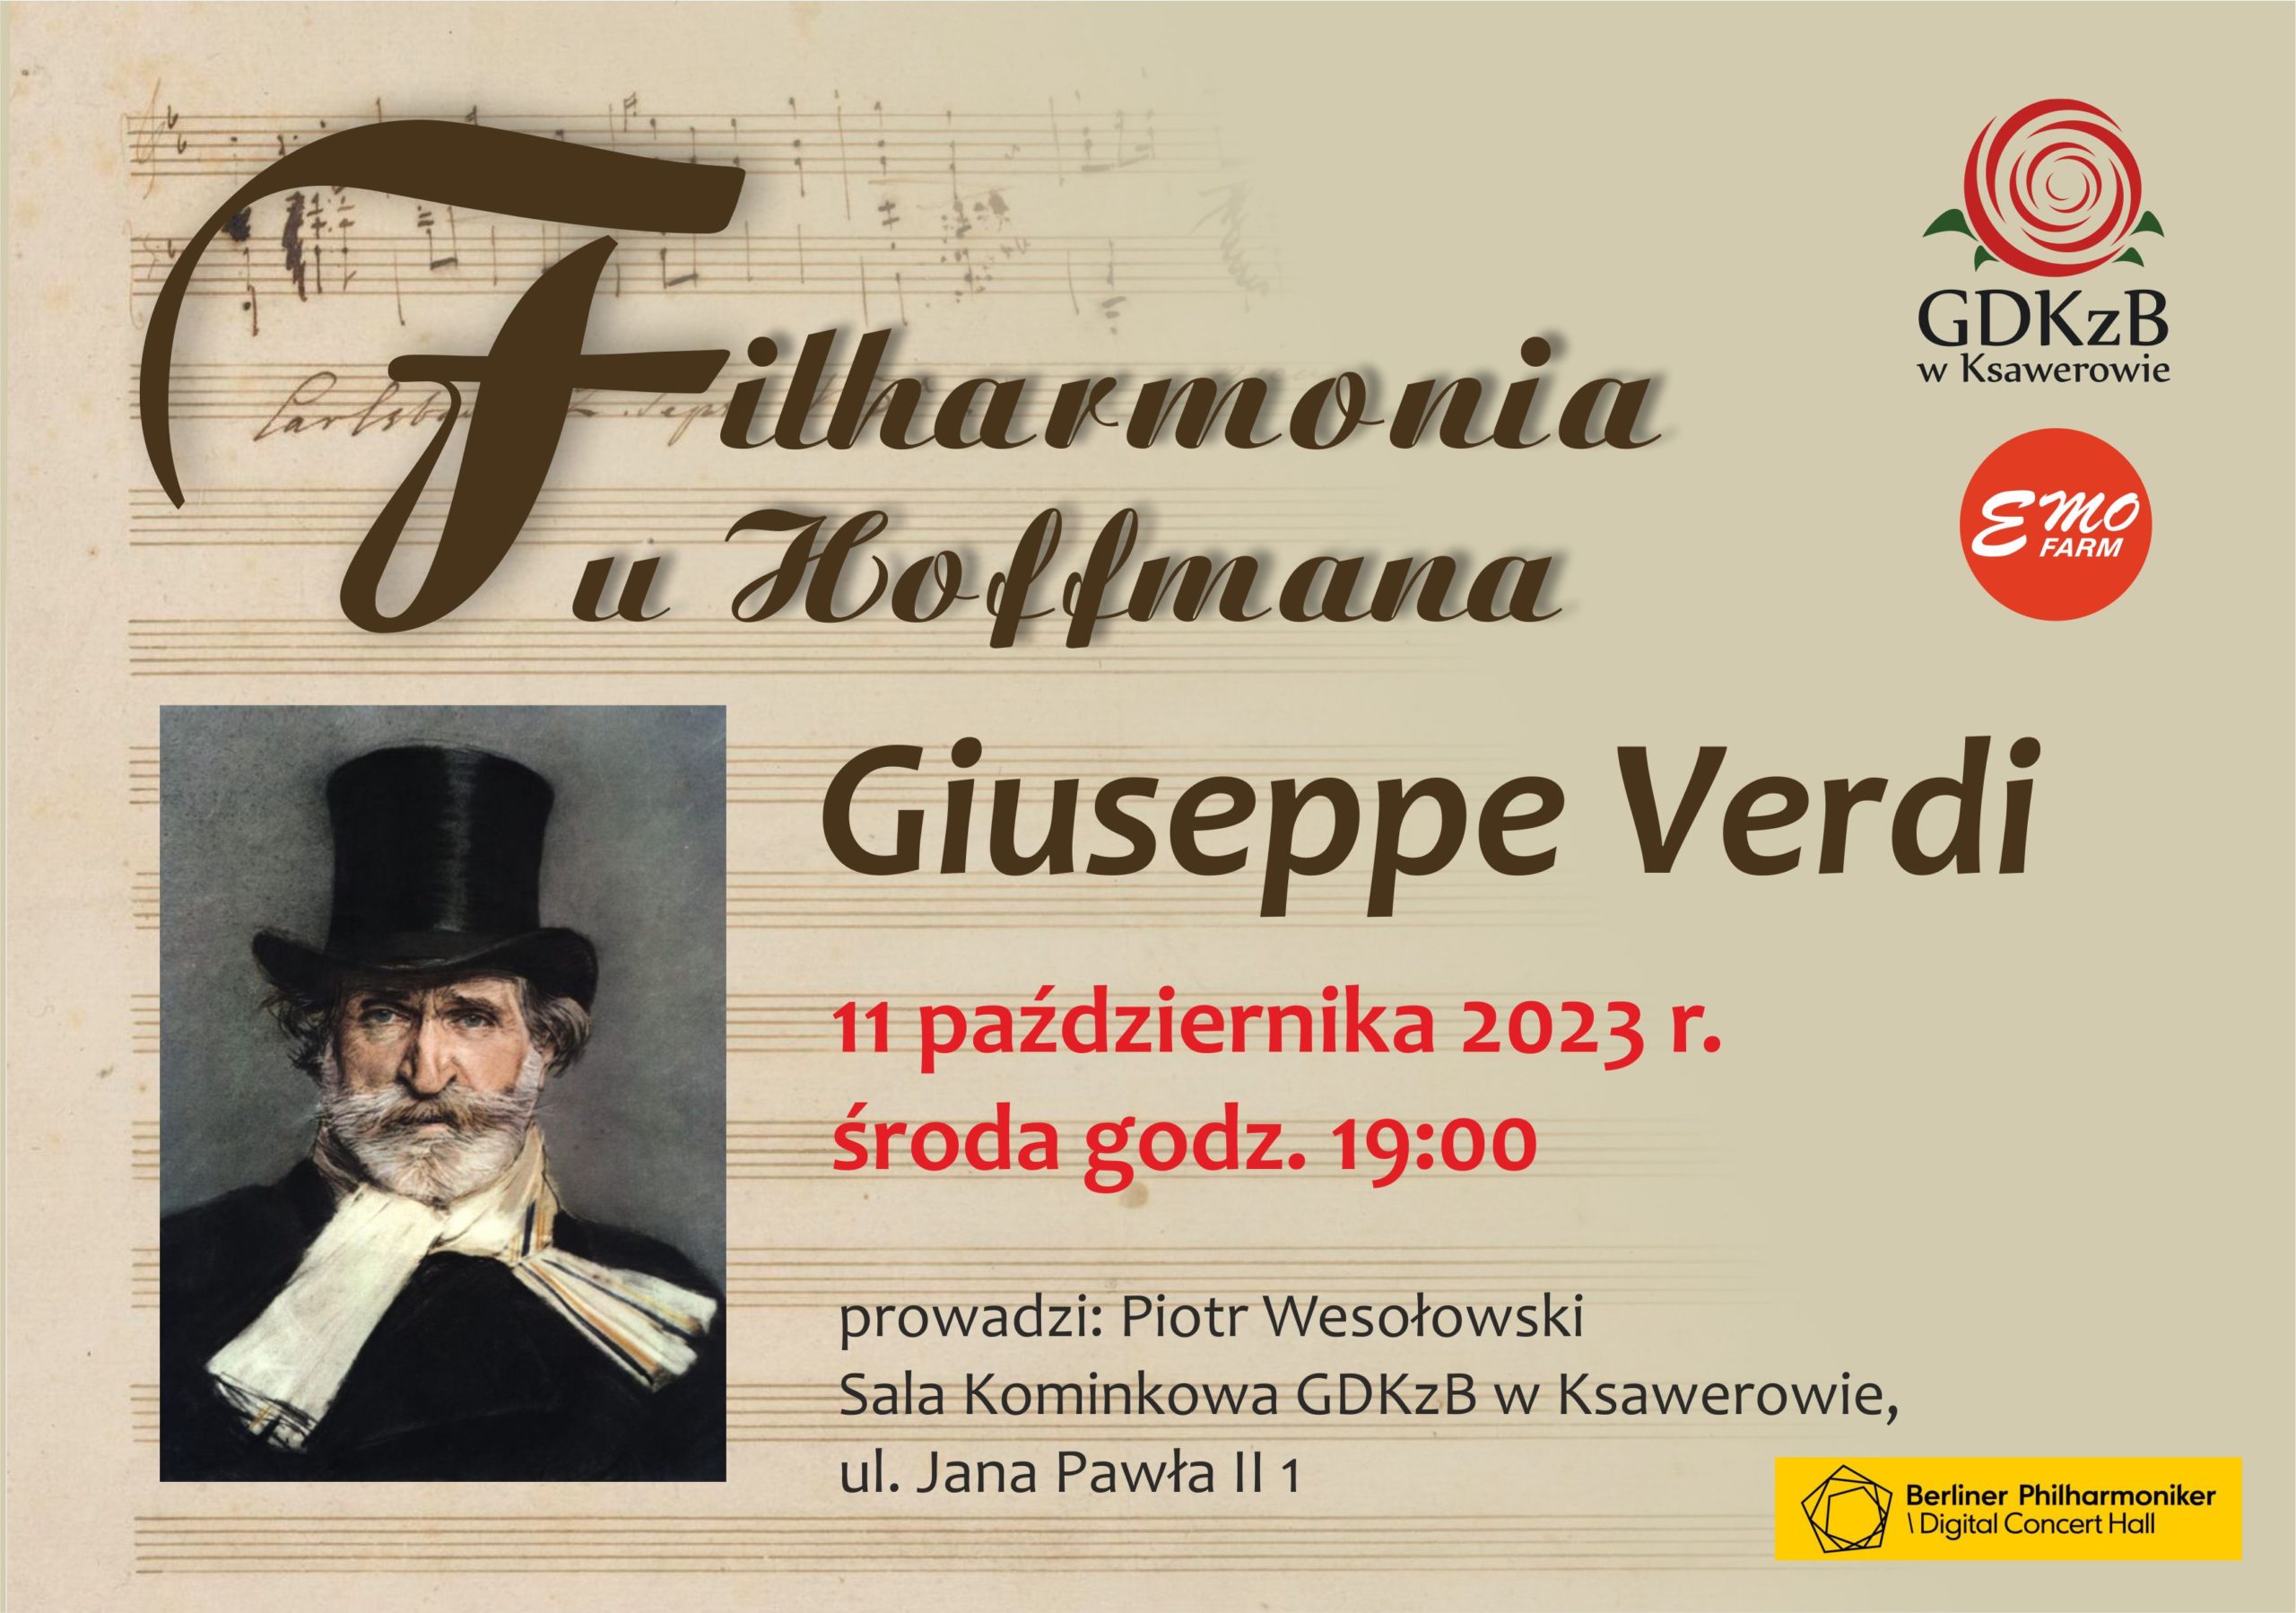 Filharmonia u Hoffmana Giuseppe Verdi 11 października 2023 środa godz. 19:00. prowadzi Piotr Wesołowski Sala Kominkowa GDKzB w Ksawerowie ul. Jana Pawła II 1